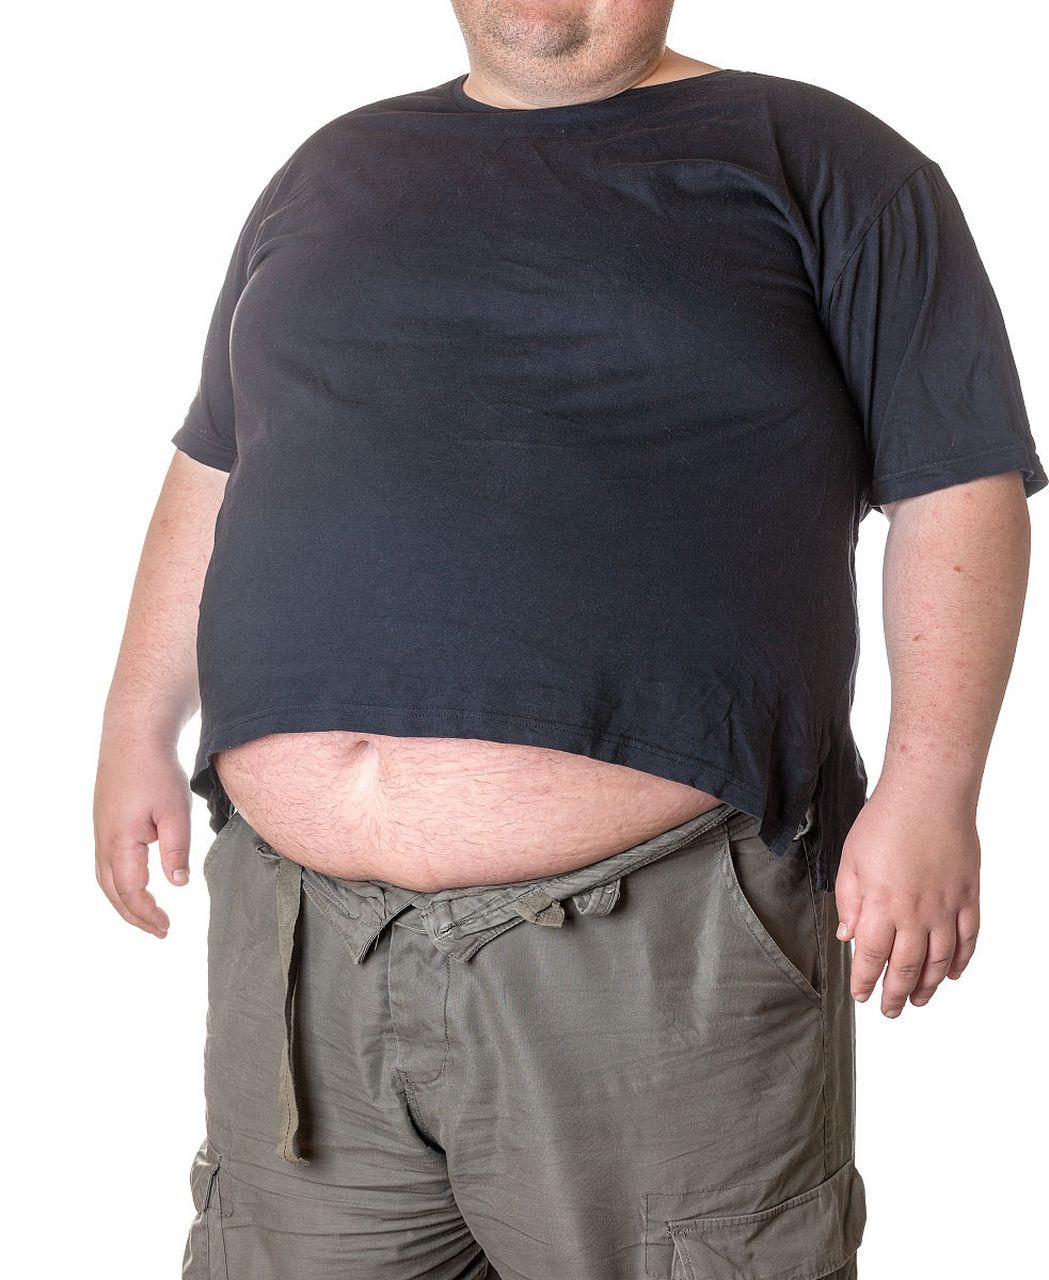 大肚子男人的肚照图片